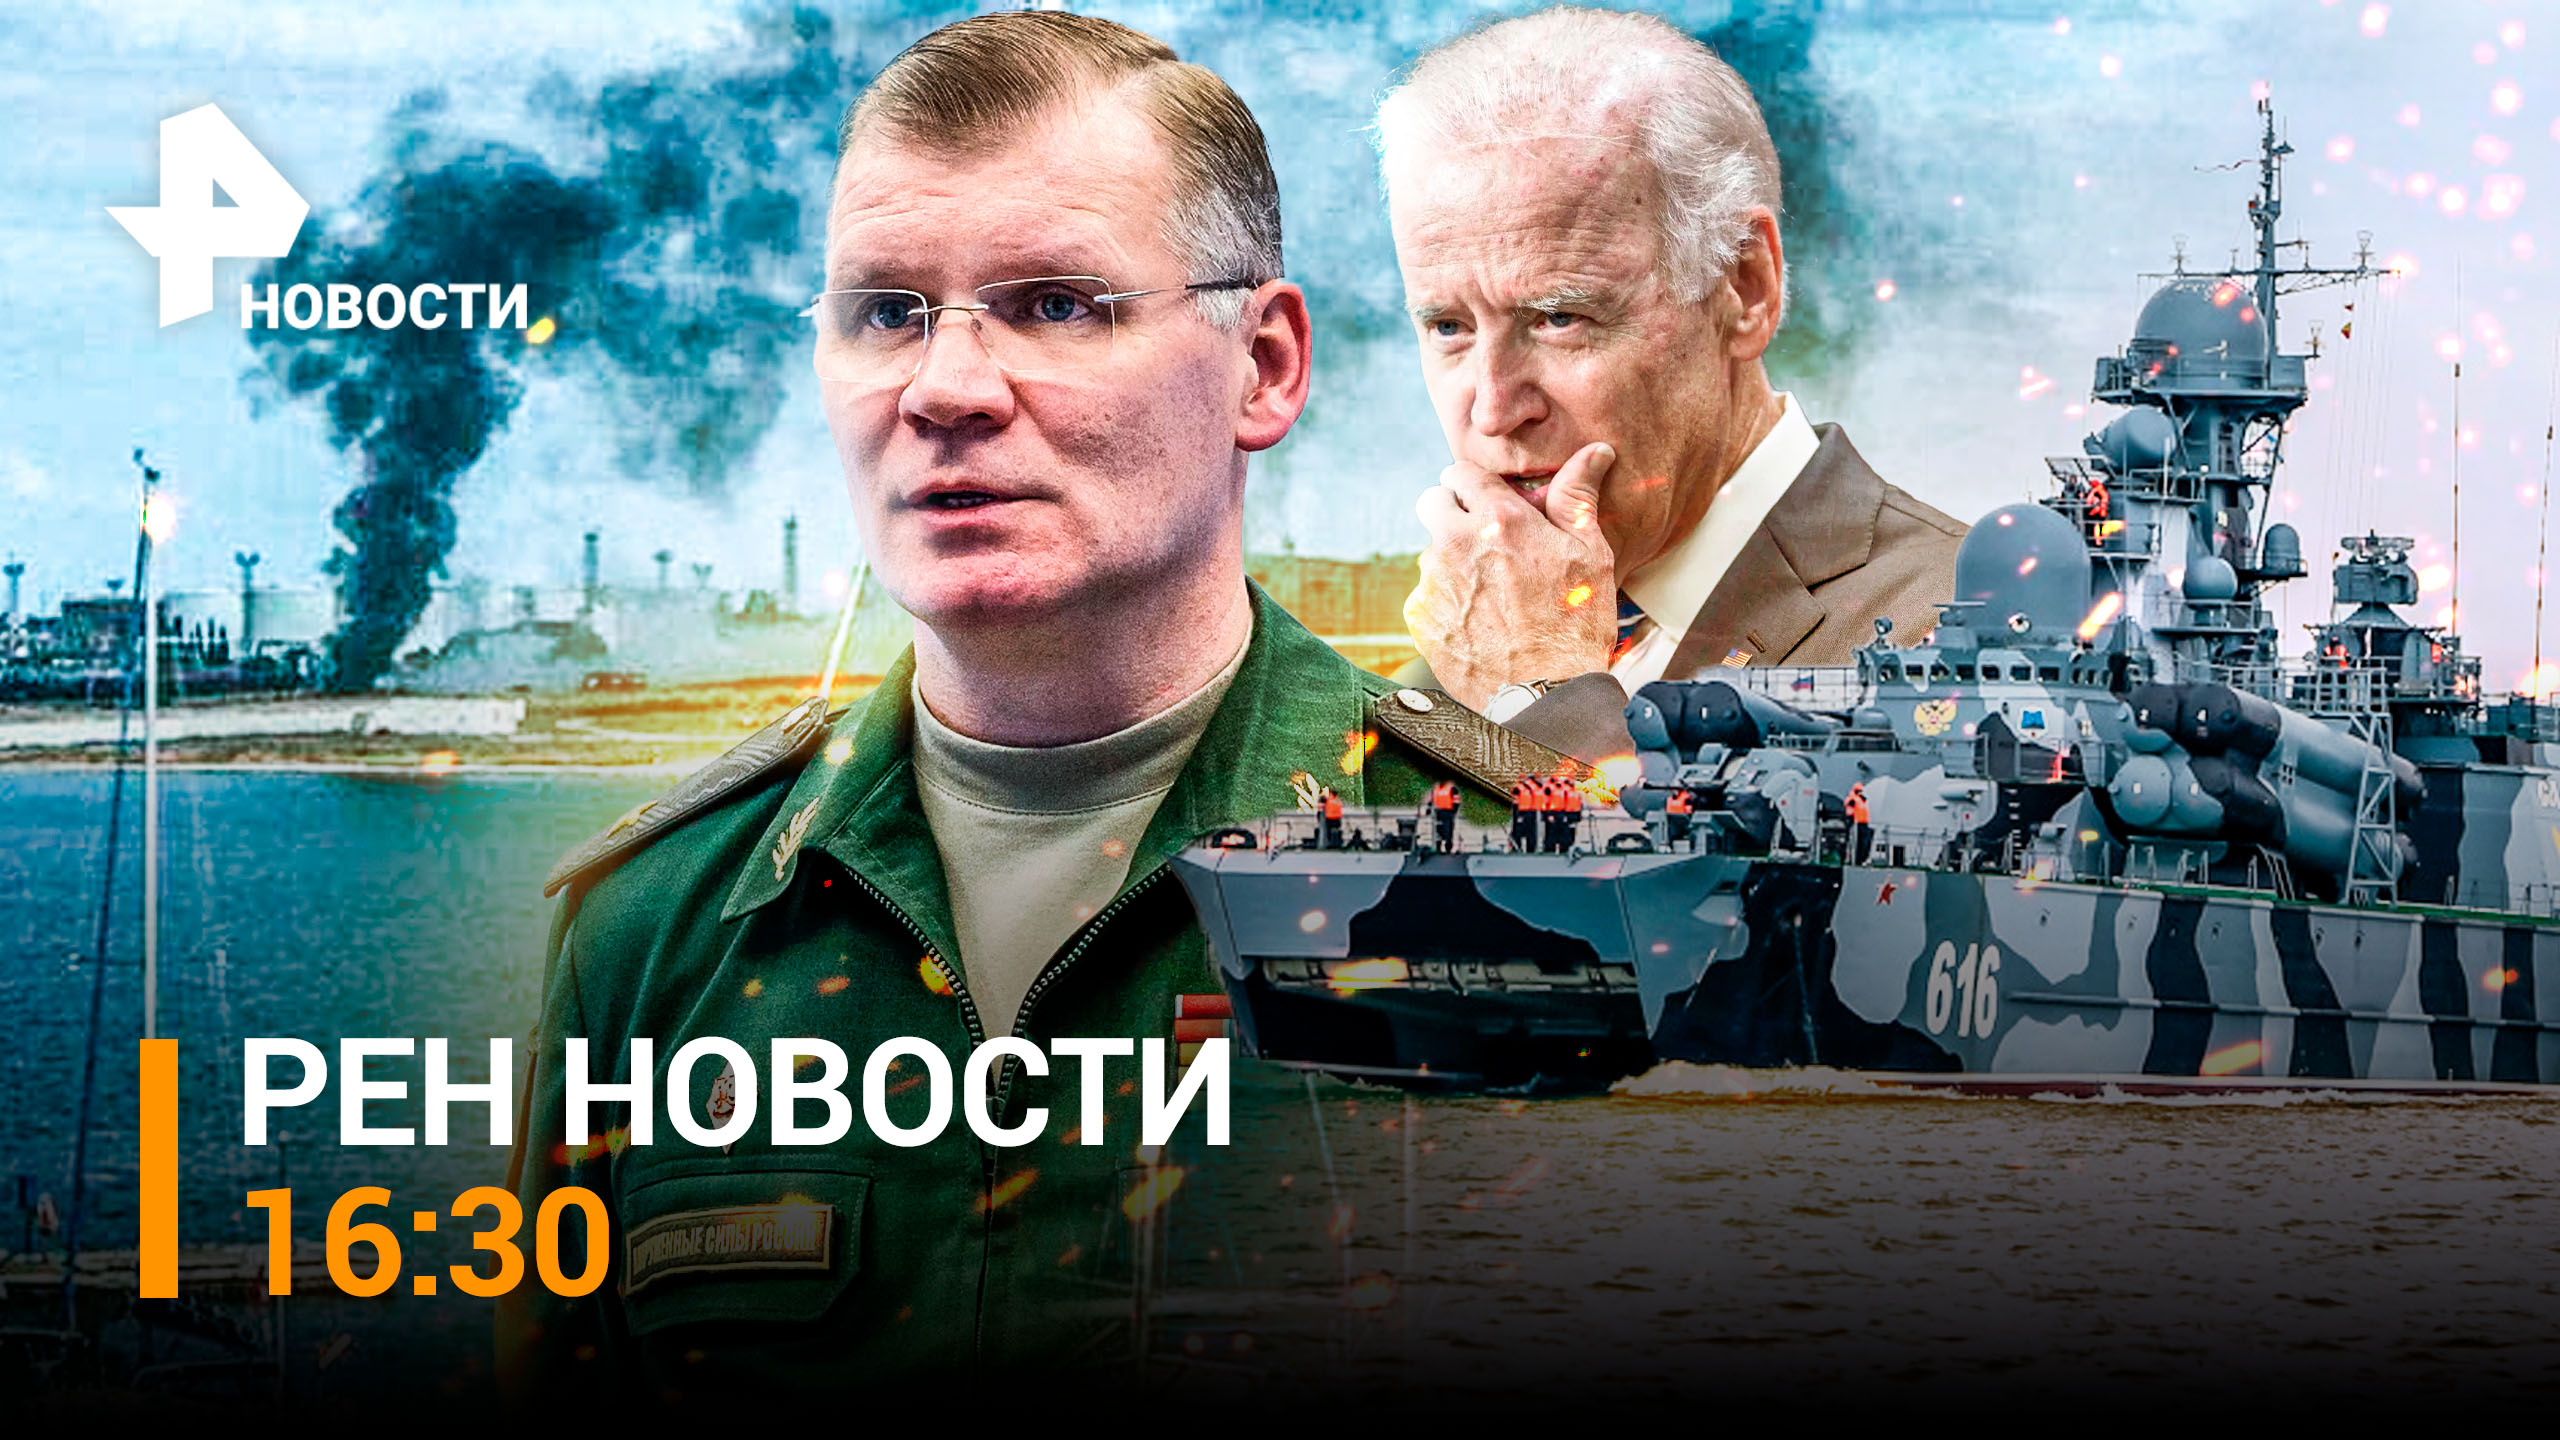 Киев послал американские беспилотники на Севастополь. Ответ из "Градов" / РЕН Новости 29.10, 16:30